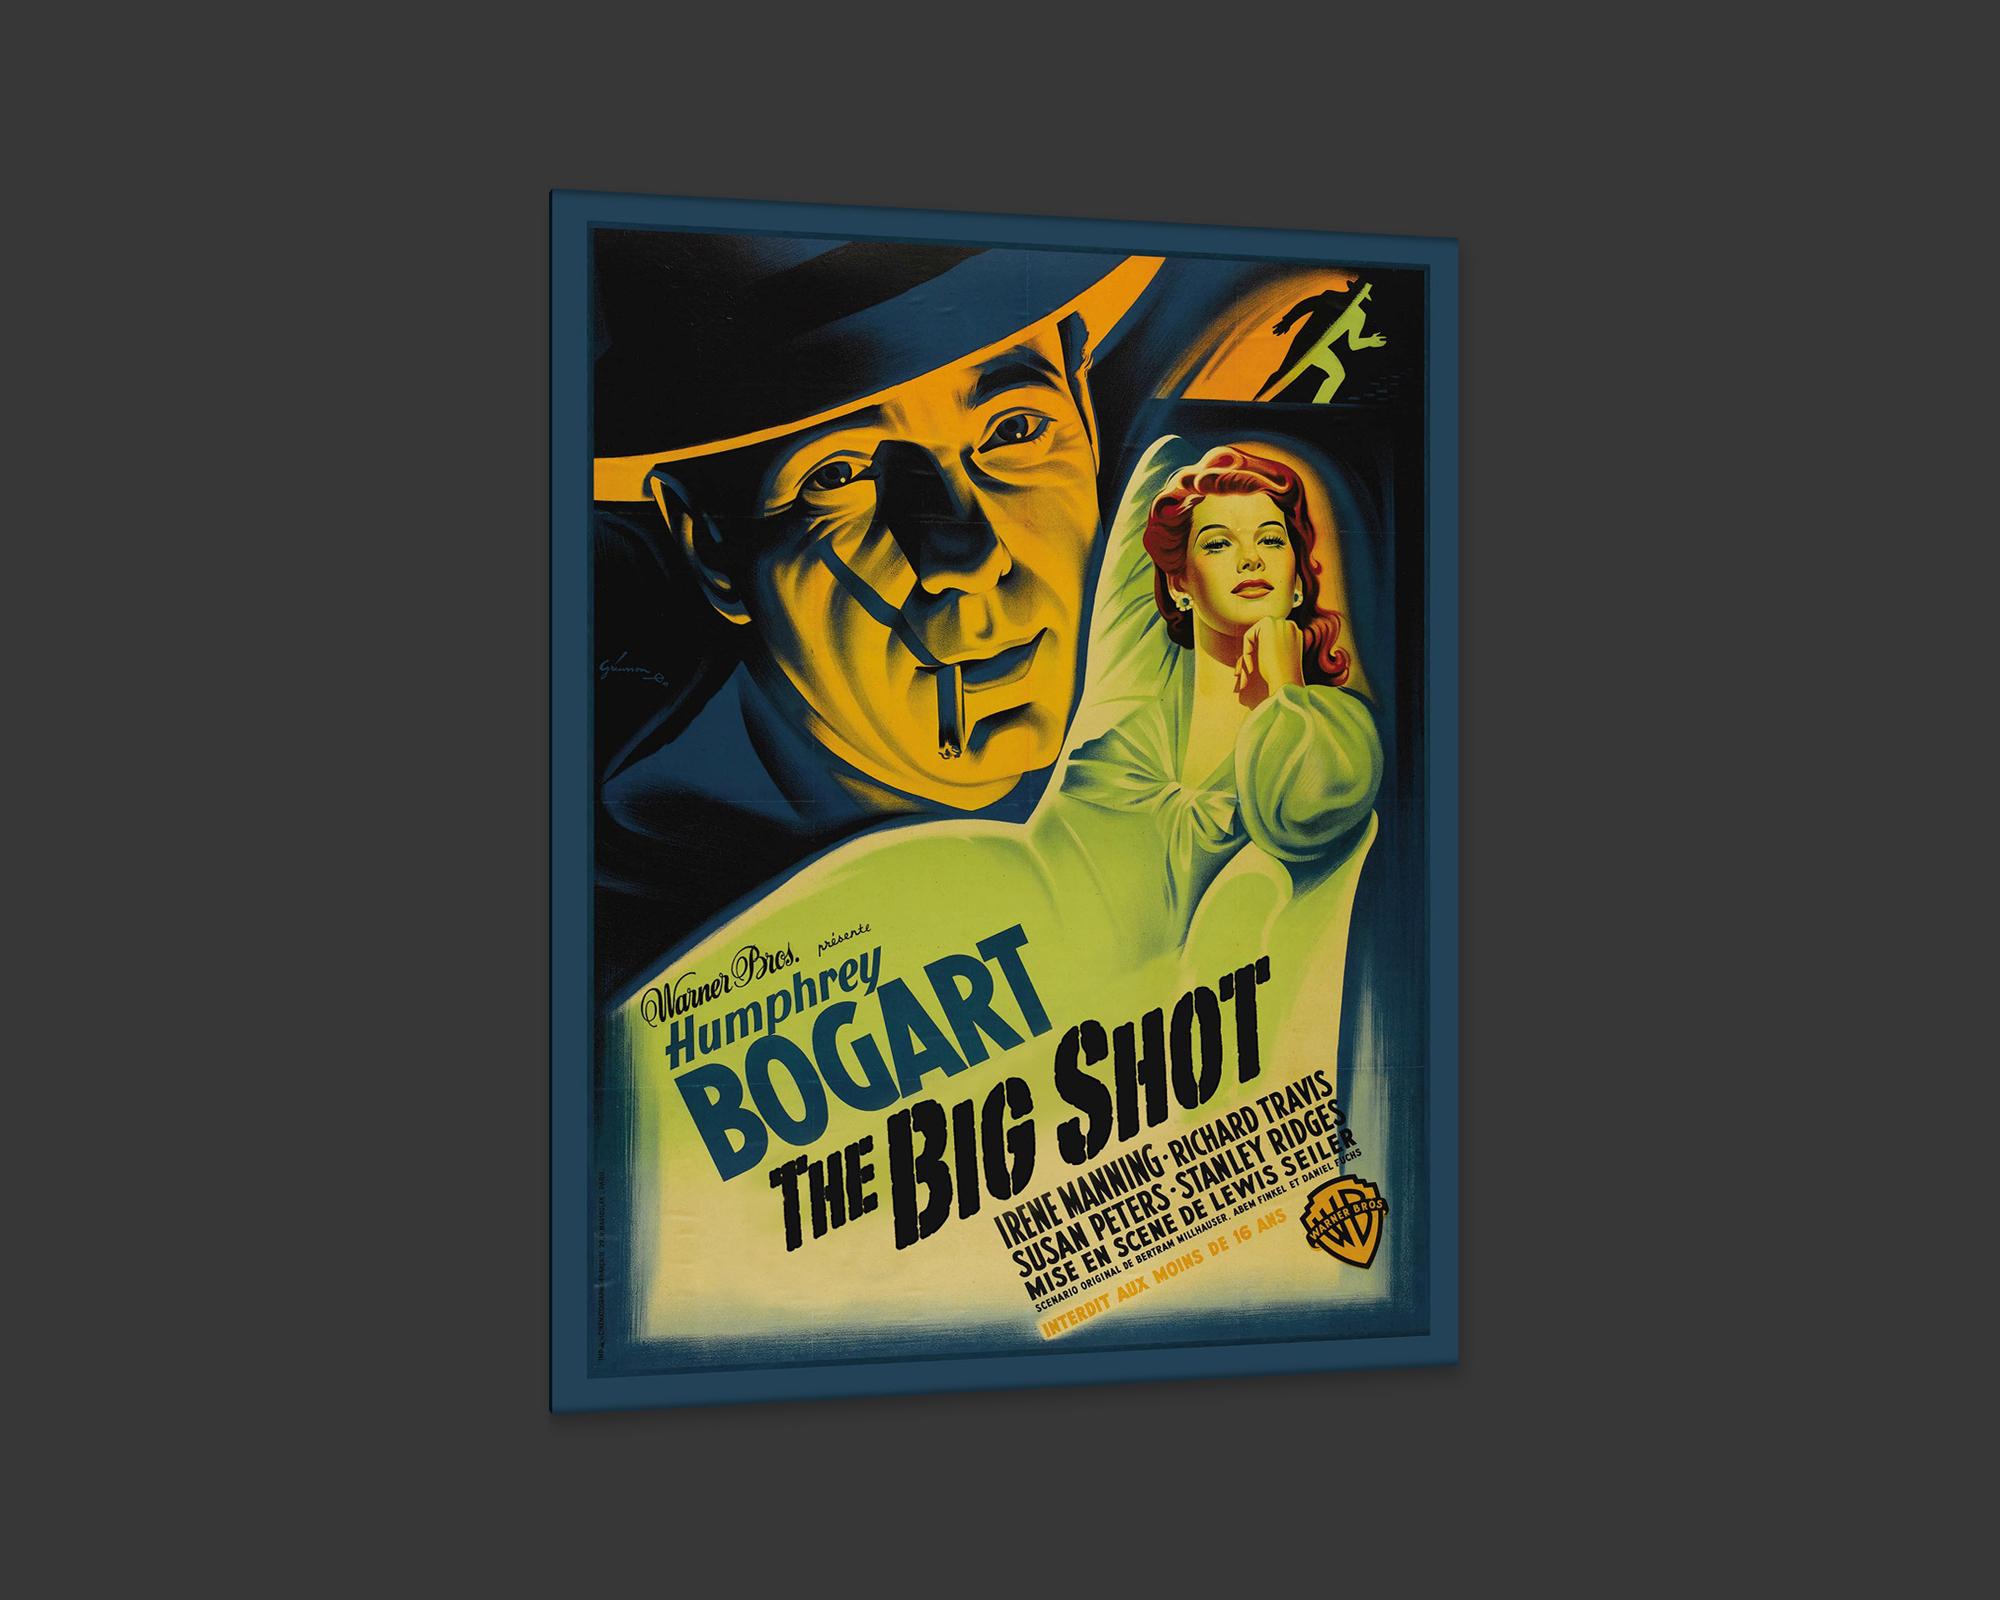 American The Big Shot, after Vintage Movie Poster, Hollywood Regency Era For Sale